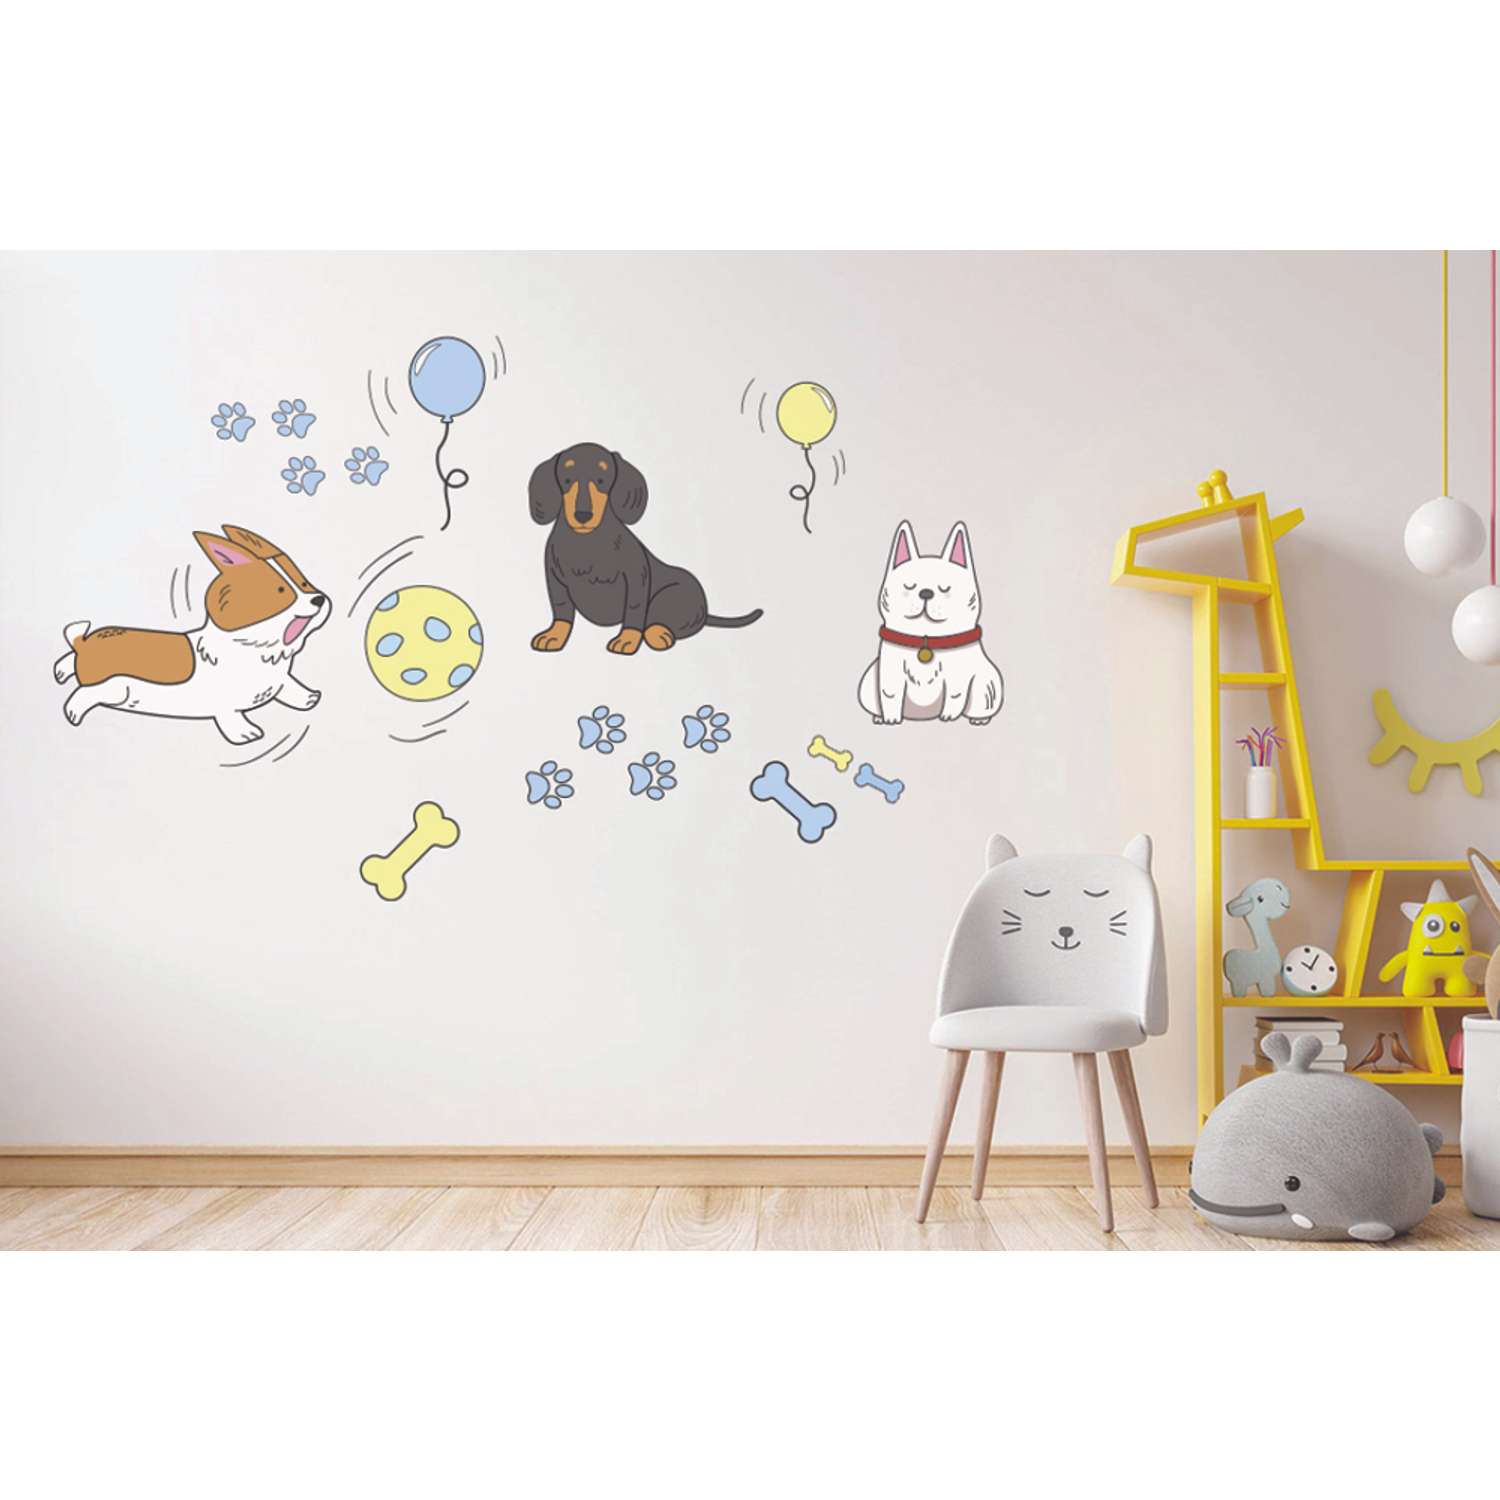 Наклейка оформительская ГК Горчаков на стену в детскую комнату с рисунком собачки для декора - фото 7